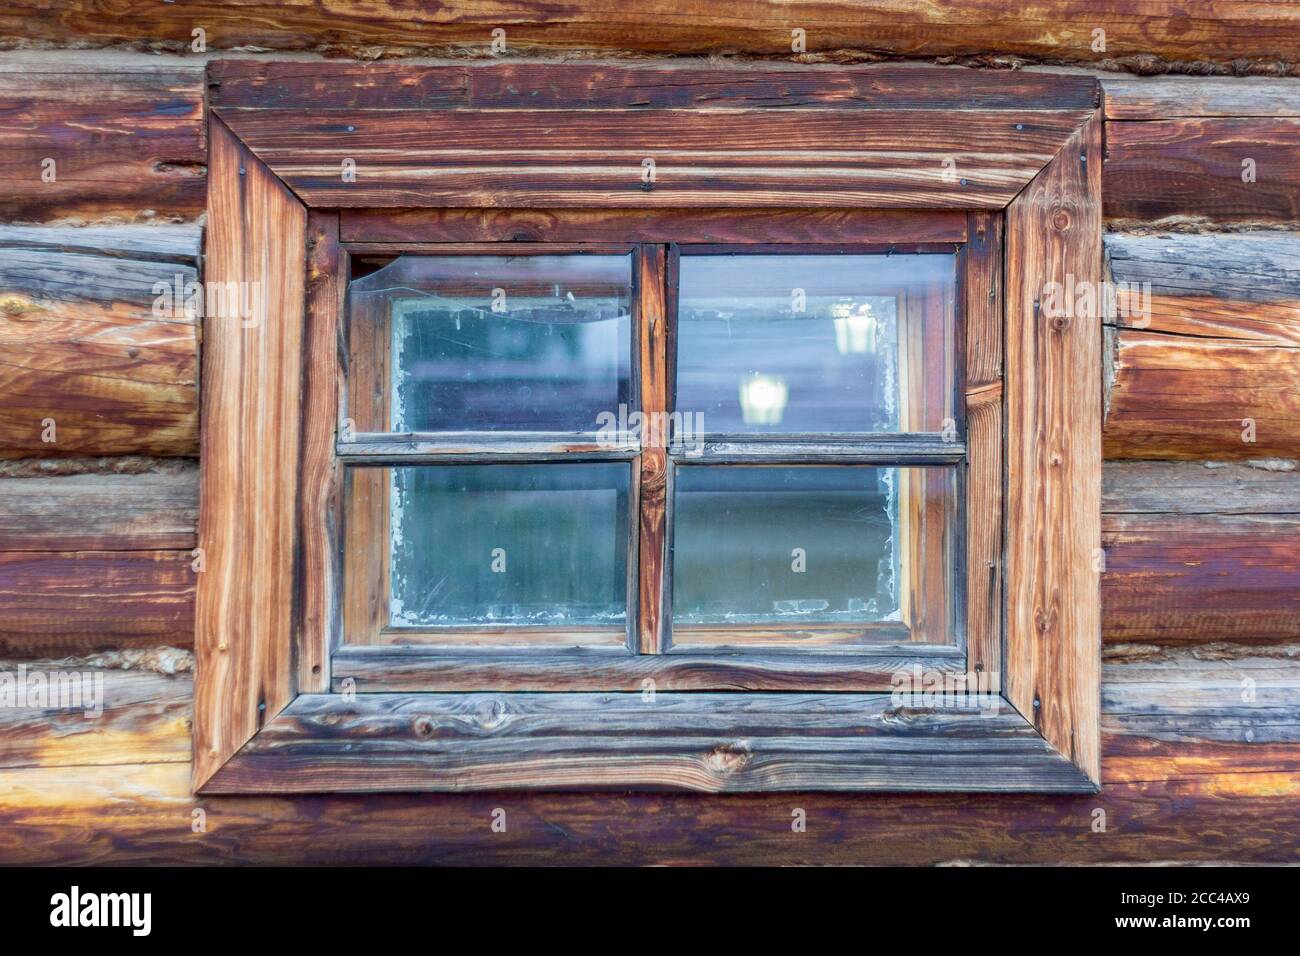 Un frammento di una vecchia capanna di legno con una finestra. Una vecchia finestra piccola con crepe in un vecchio shack di legno. Foto Stock